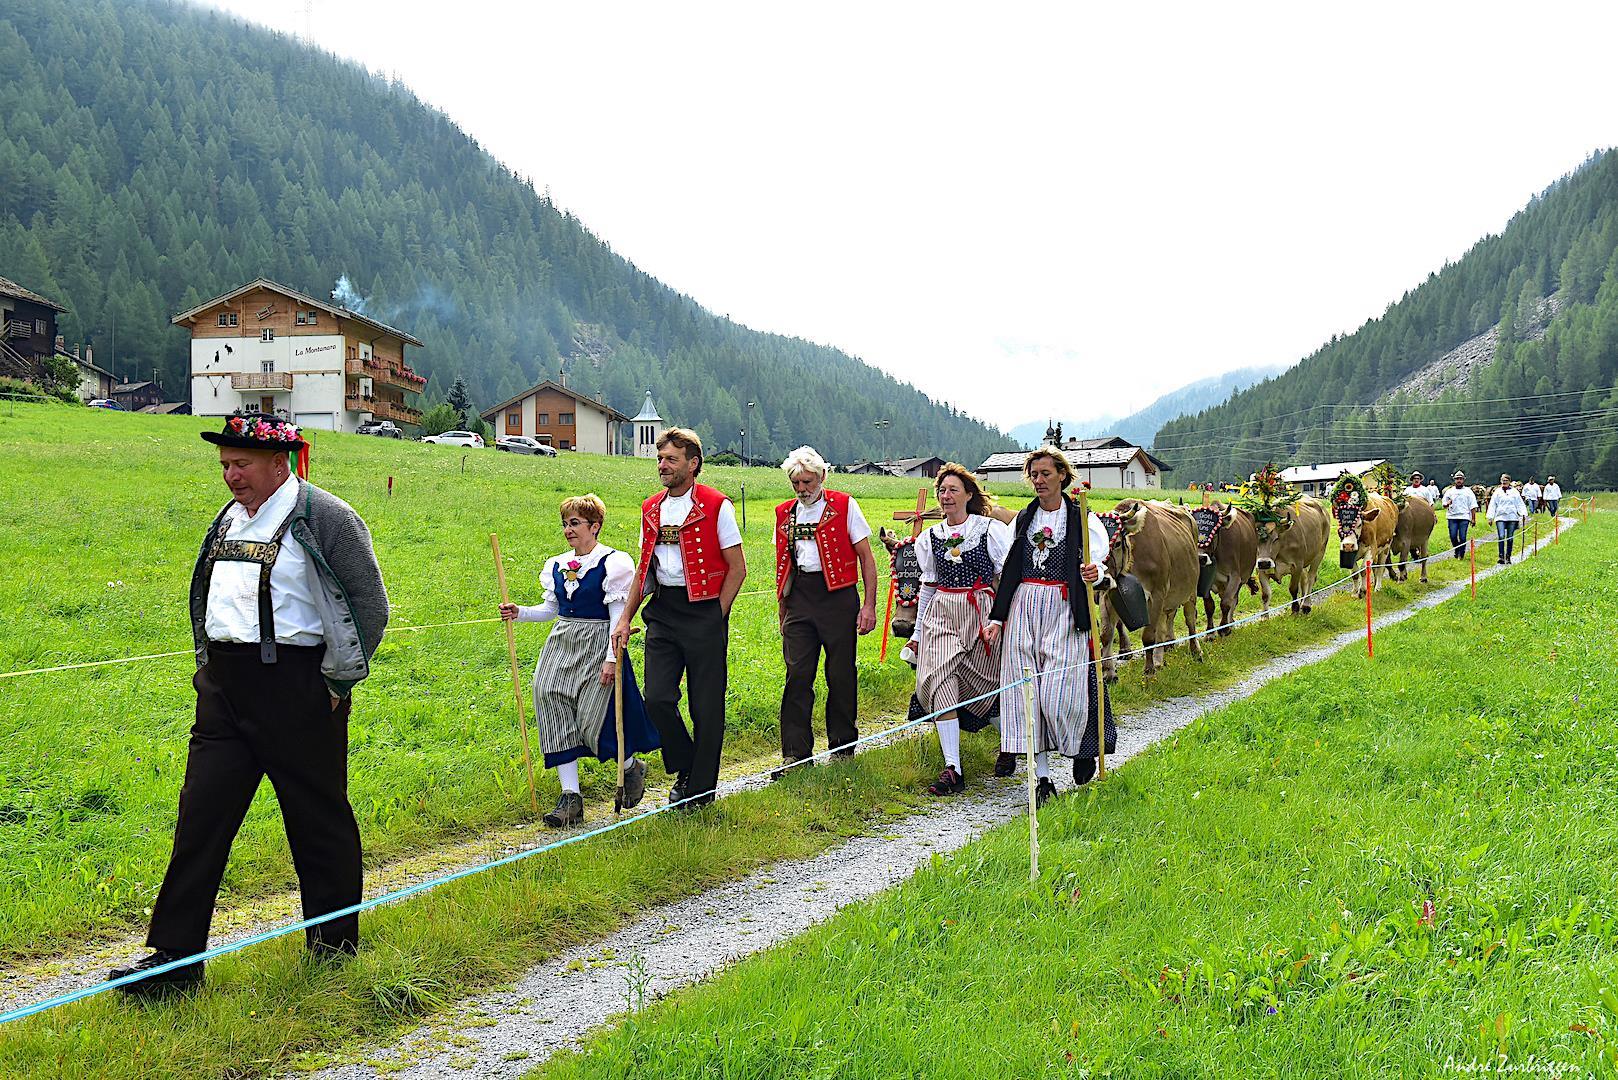 Alpine procession from Hoferalp to Saas-Balen